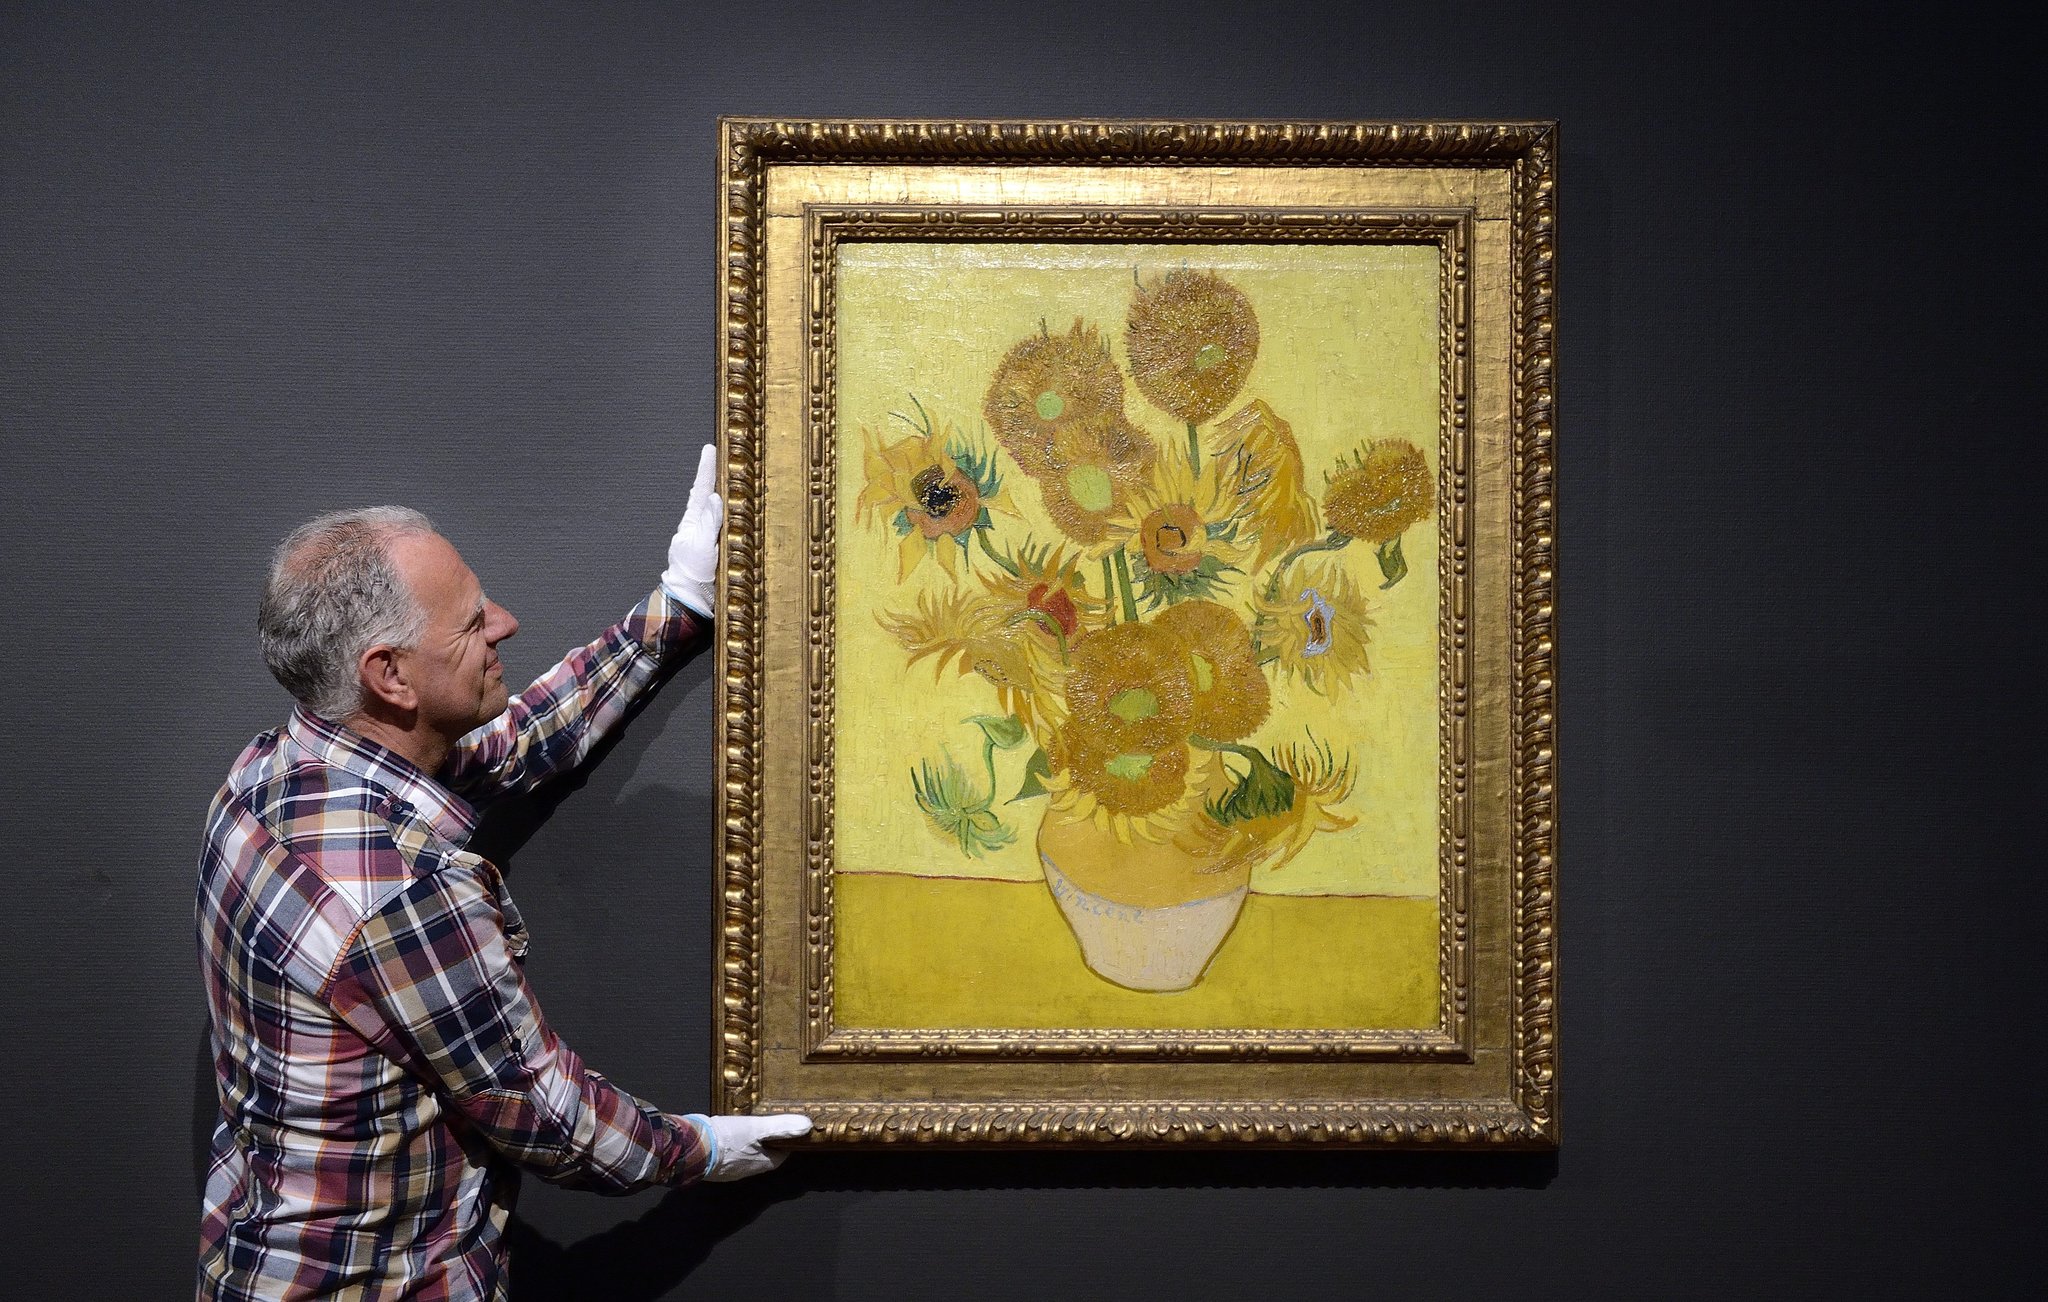 Gdy zwycięzca bierze wszystko, czyli dlaczego ludzie kochają „Słoneczniki” van Gogha?